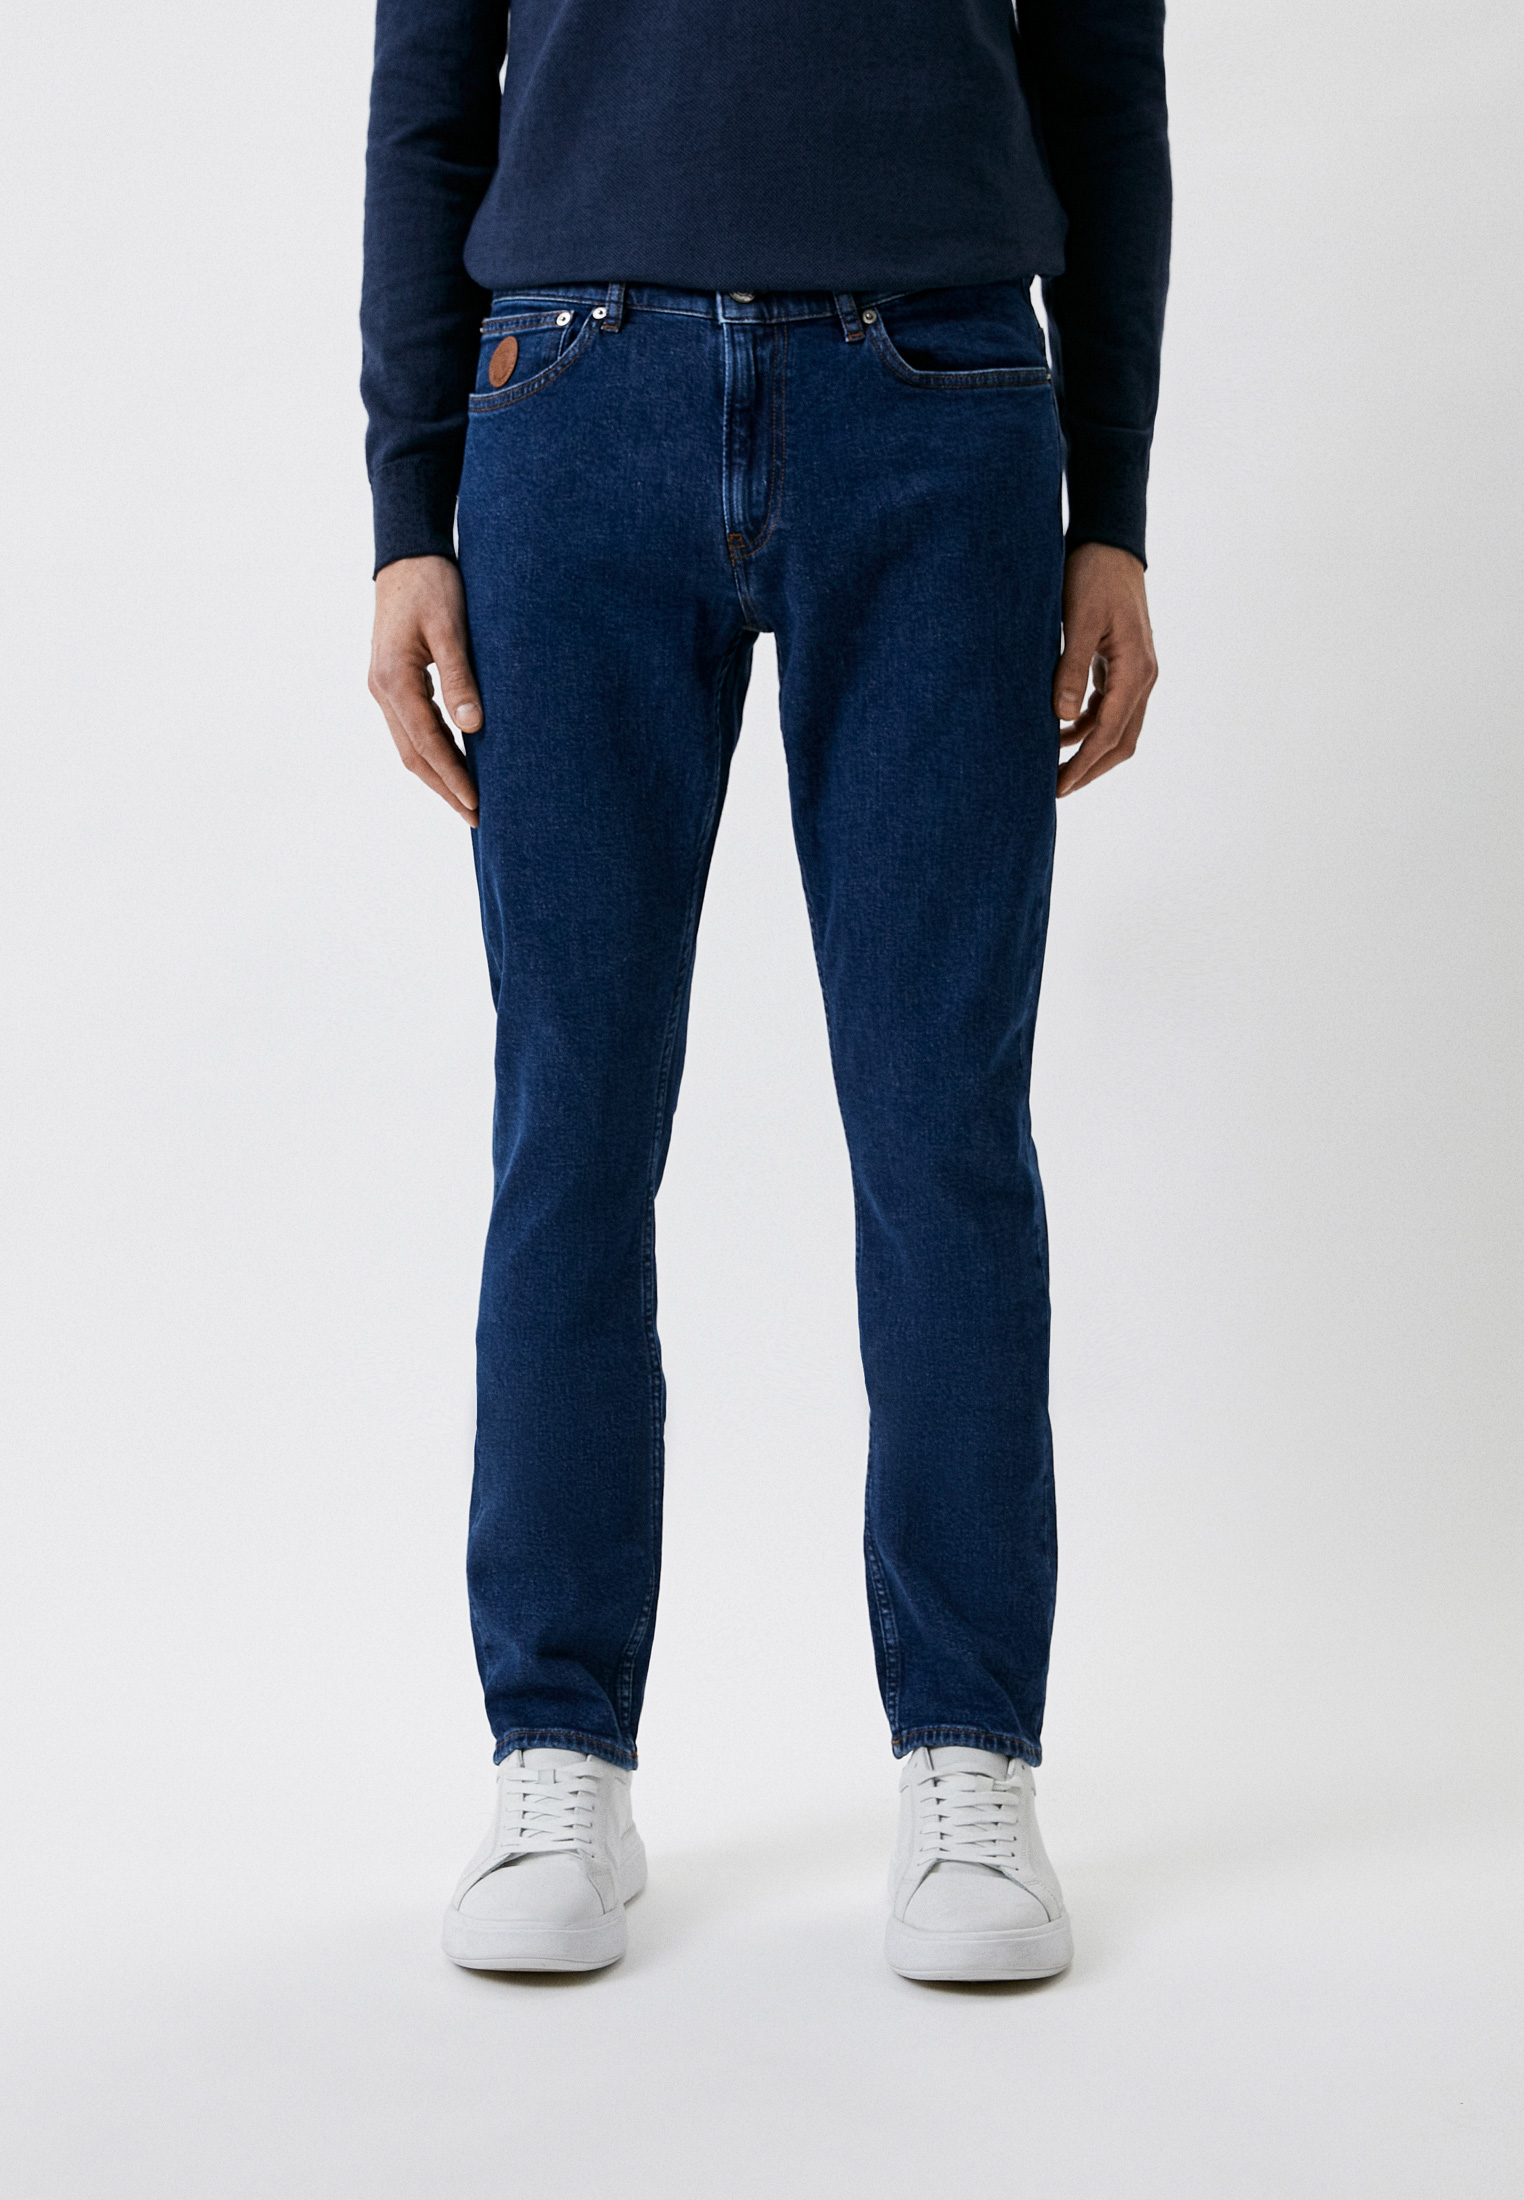 Мужские зауженные джинсы Trussardi (Труссарди) 52J00096-1T005752: изображение 1